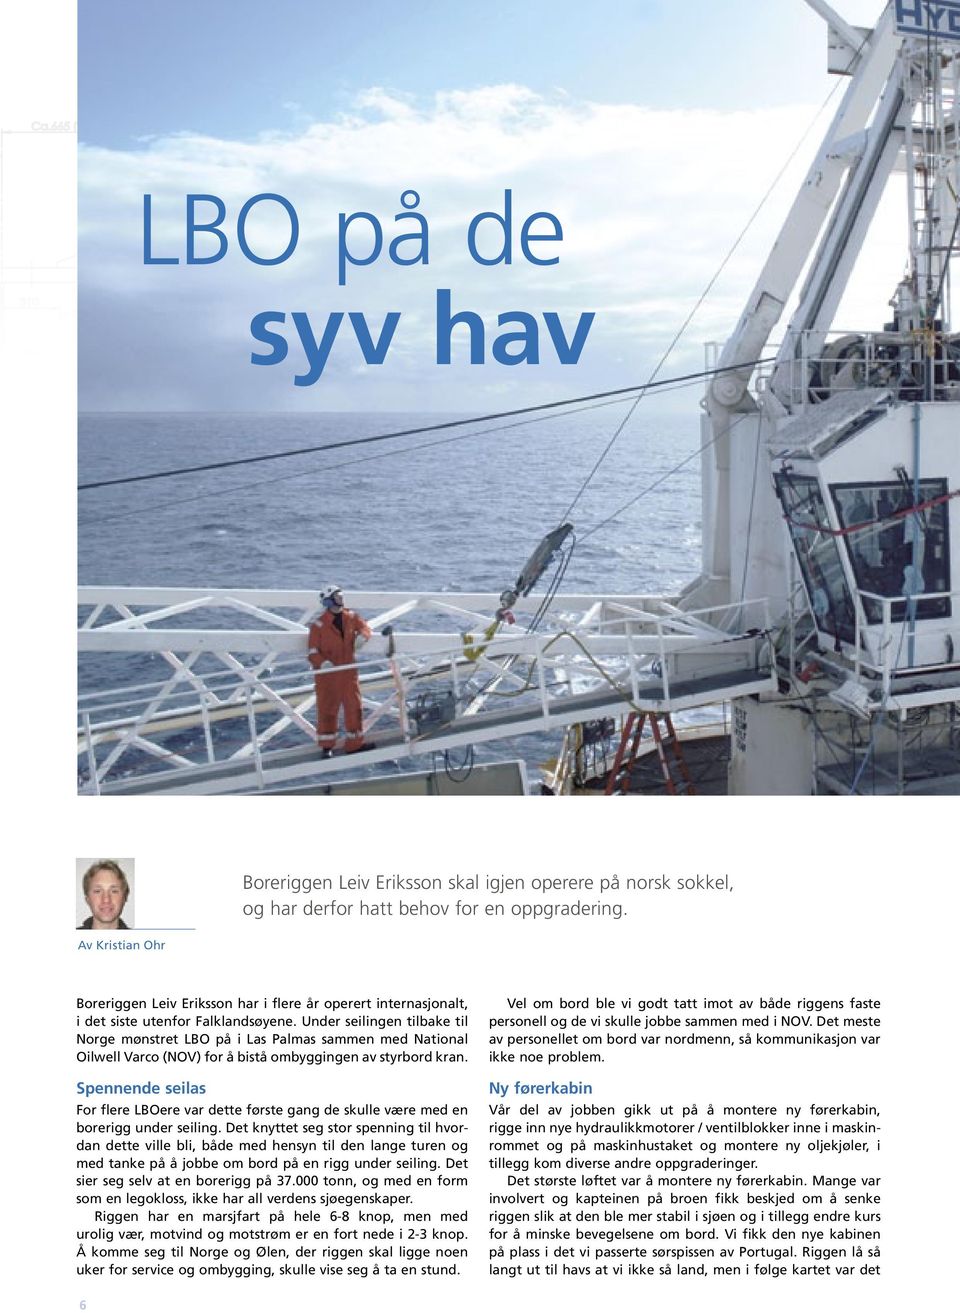 Under seilingen tilbake til Norge mønstret LBO på i Las Palmas sammen med National Oilwell Varco (NOV) for å bistå ombyggingen av styrbord kran.